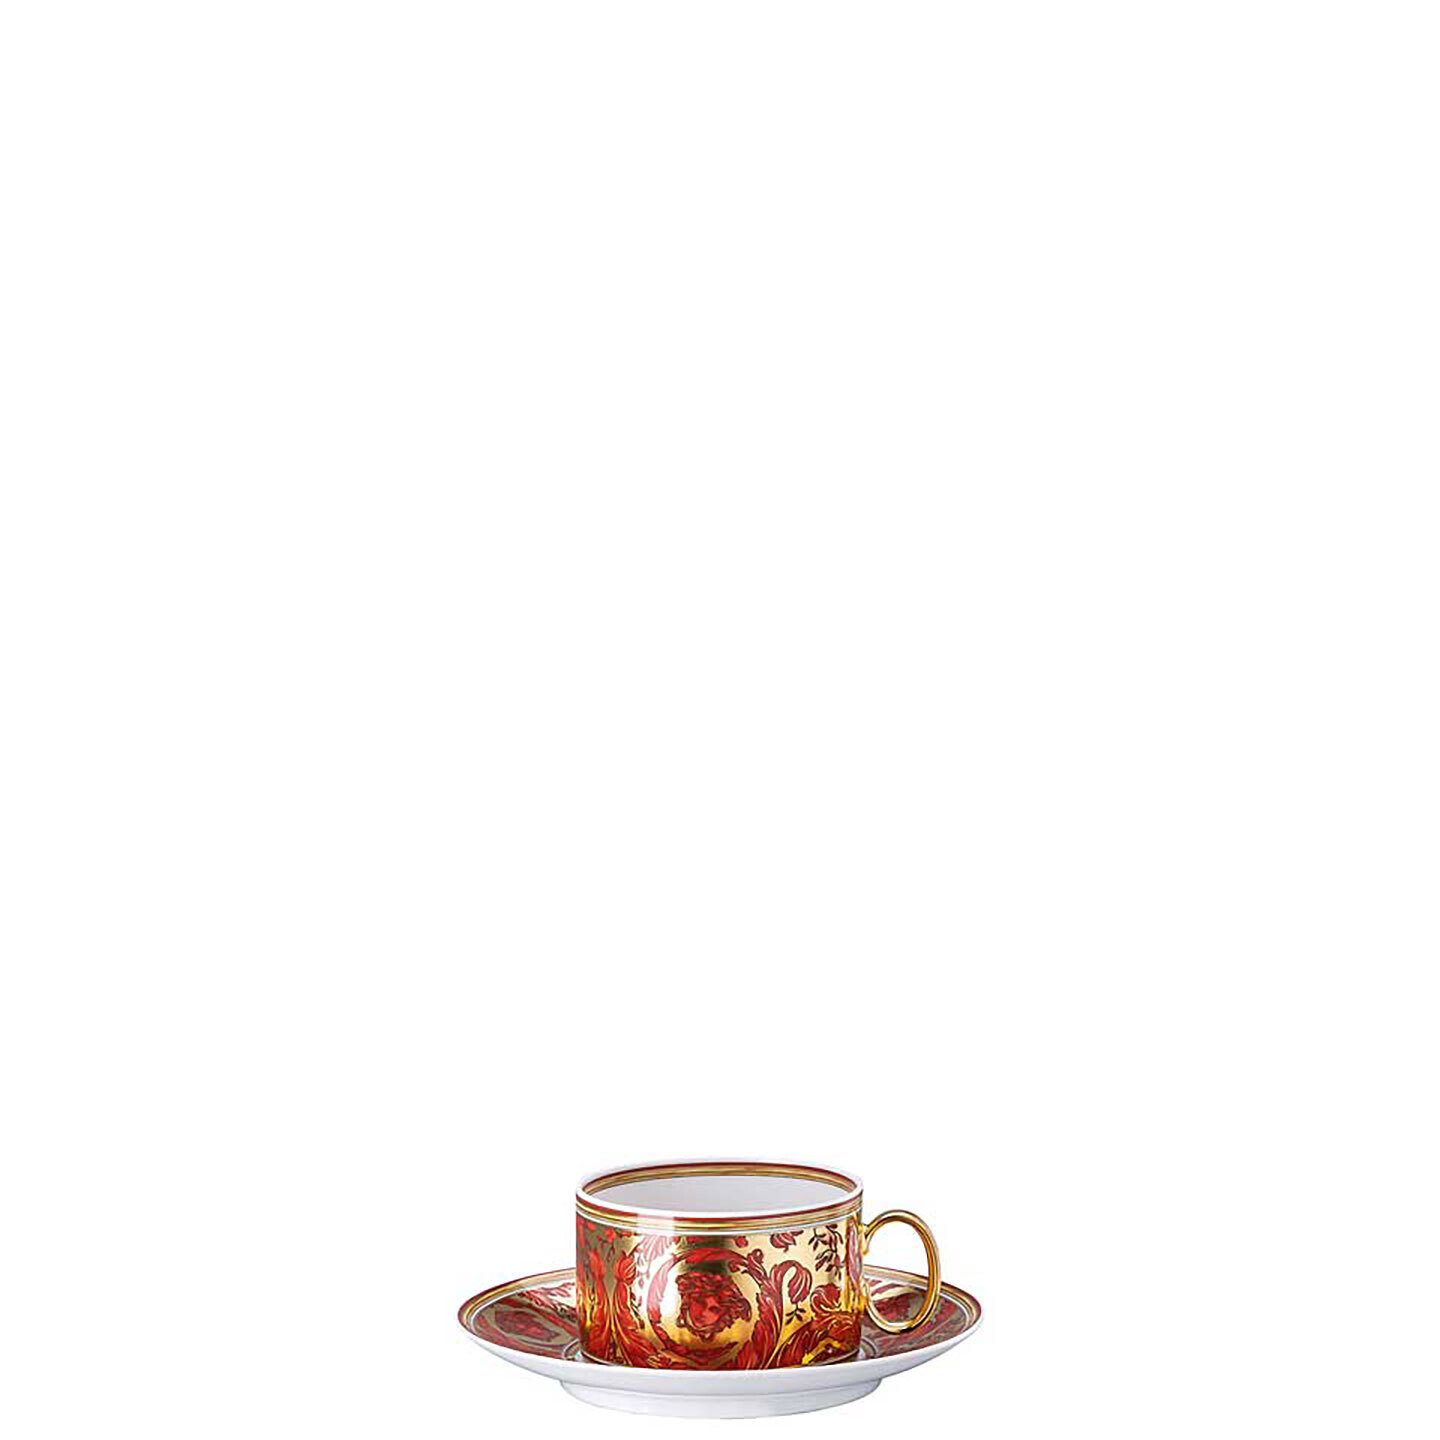 Versace Medusa Garland Red Tea Cup & Saucer 19335-409958-14640